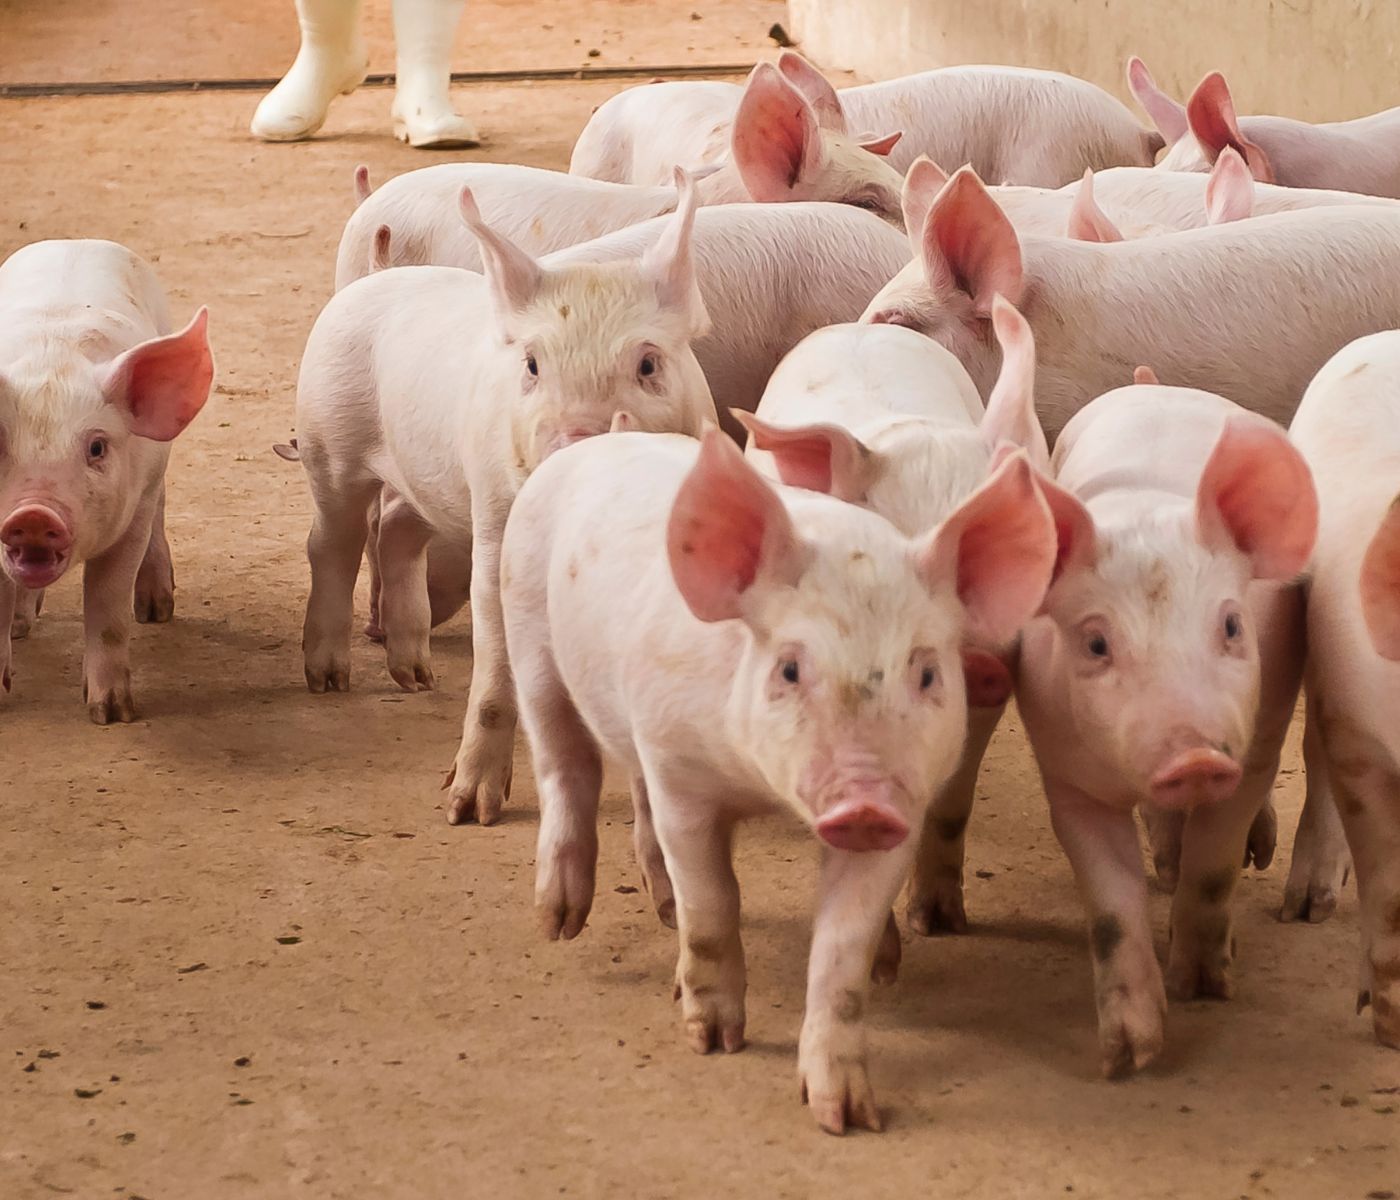 Bioseguridad Porcina en EE. UU.: Importancia del Plan Secure Pork Supply